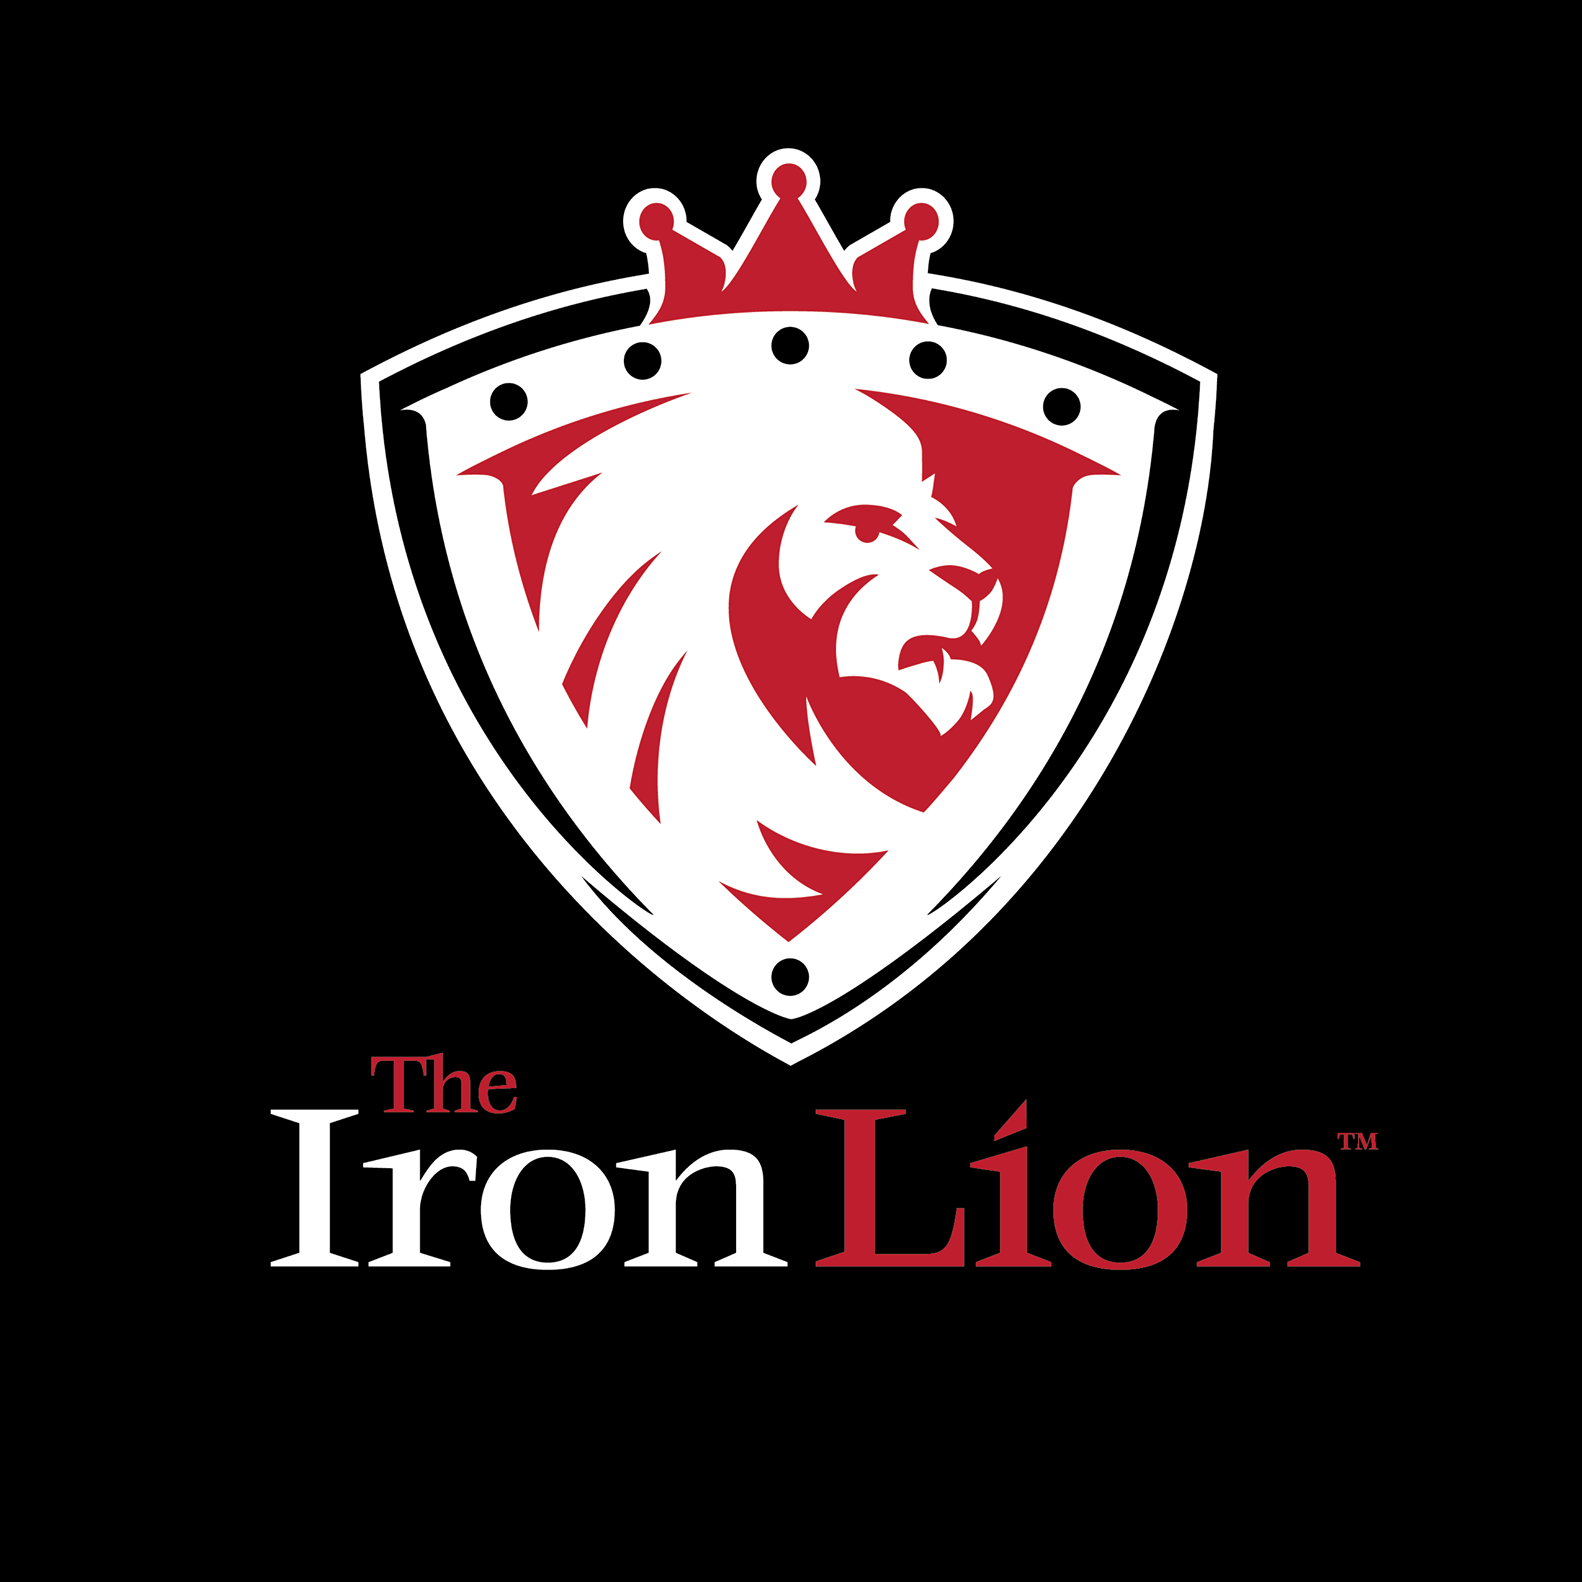 The Iron Lion